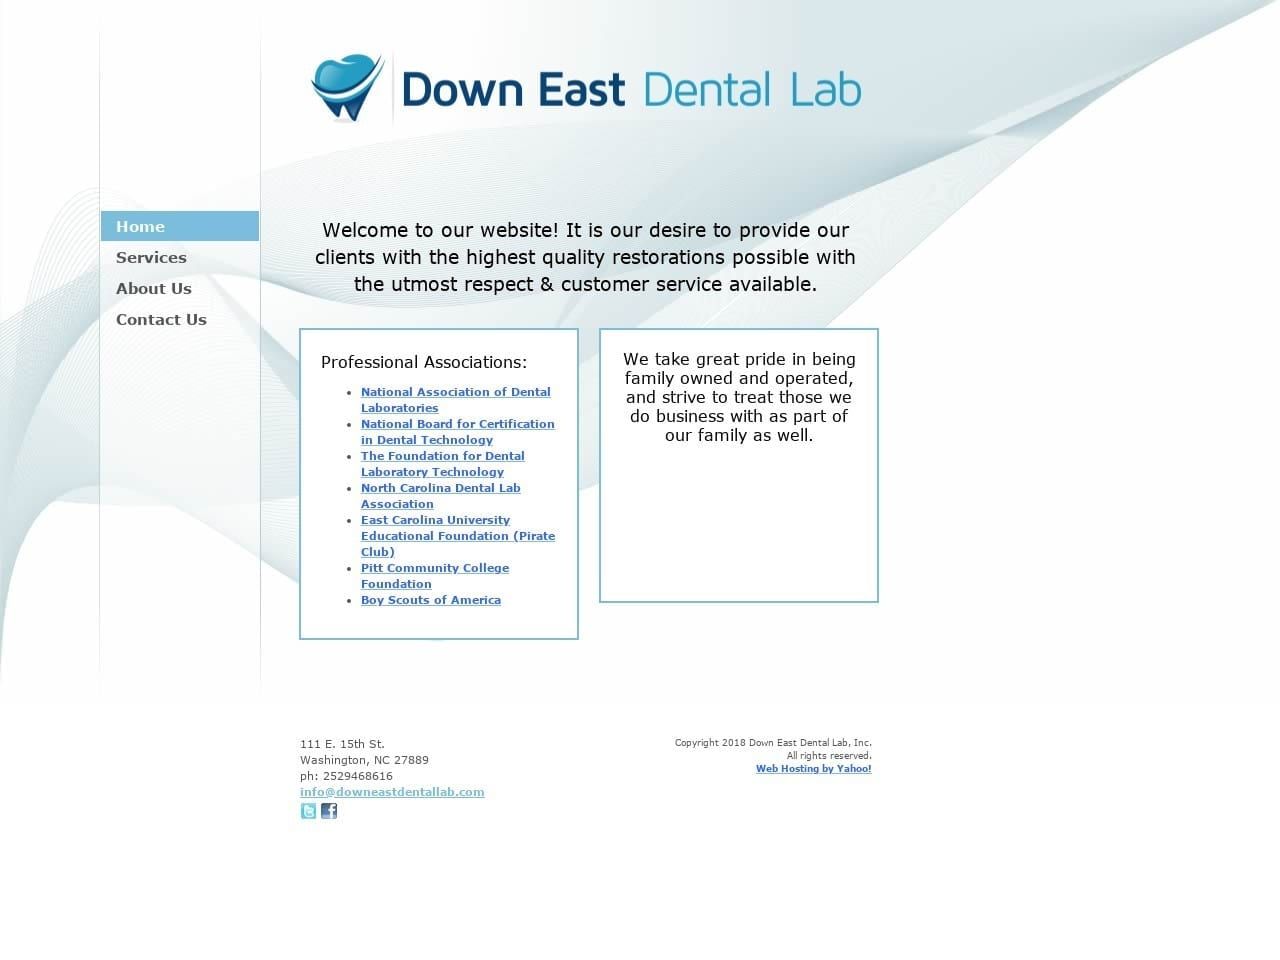 Down East Dental Lab Website Screenshot from downeastdentallab.com